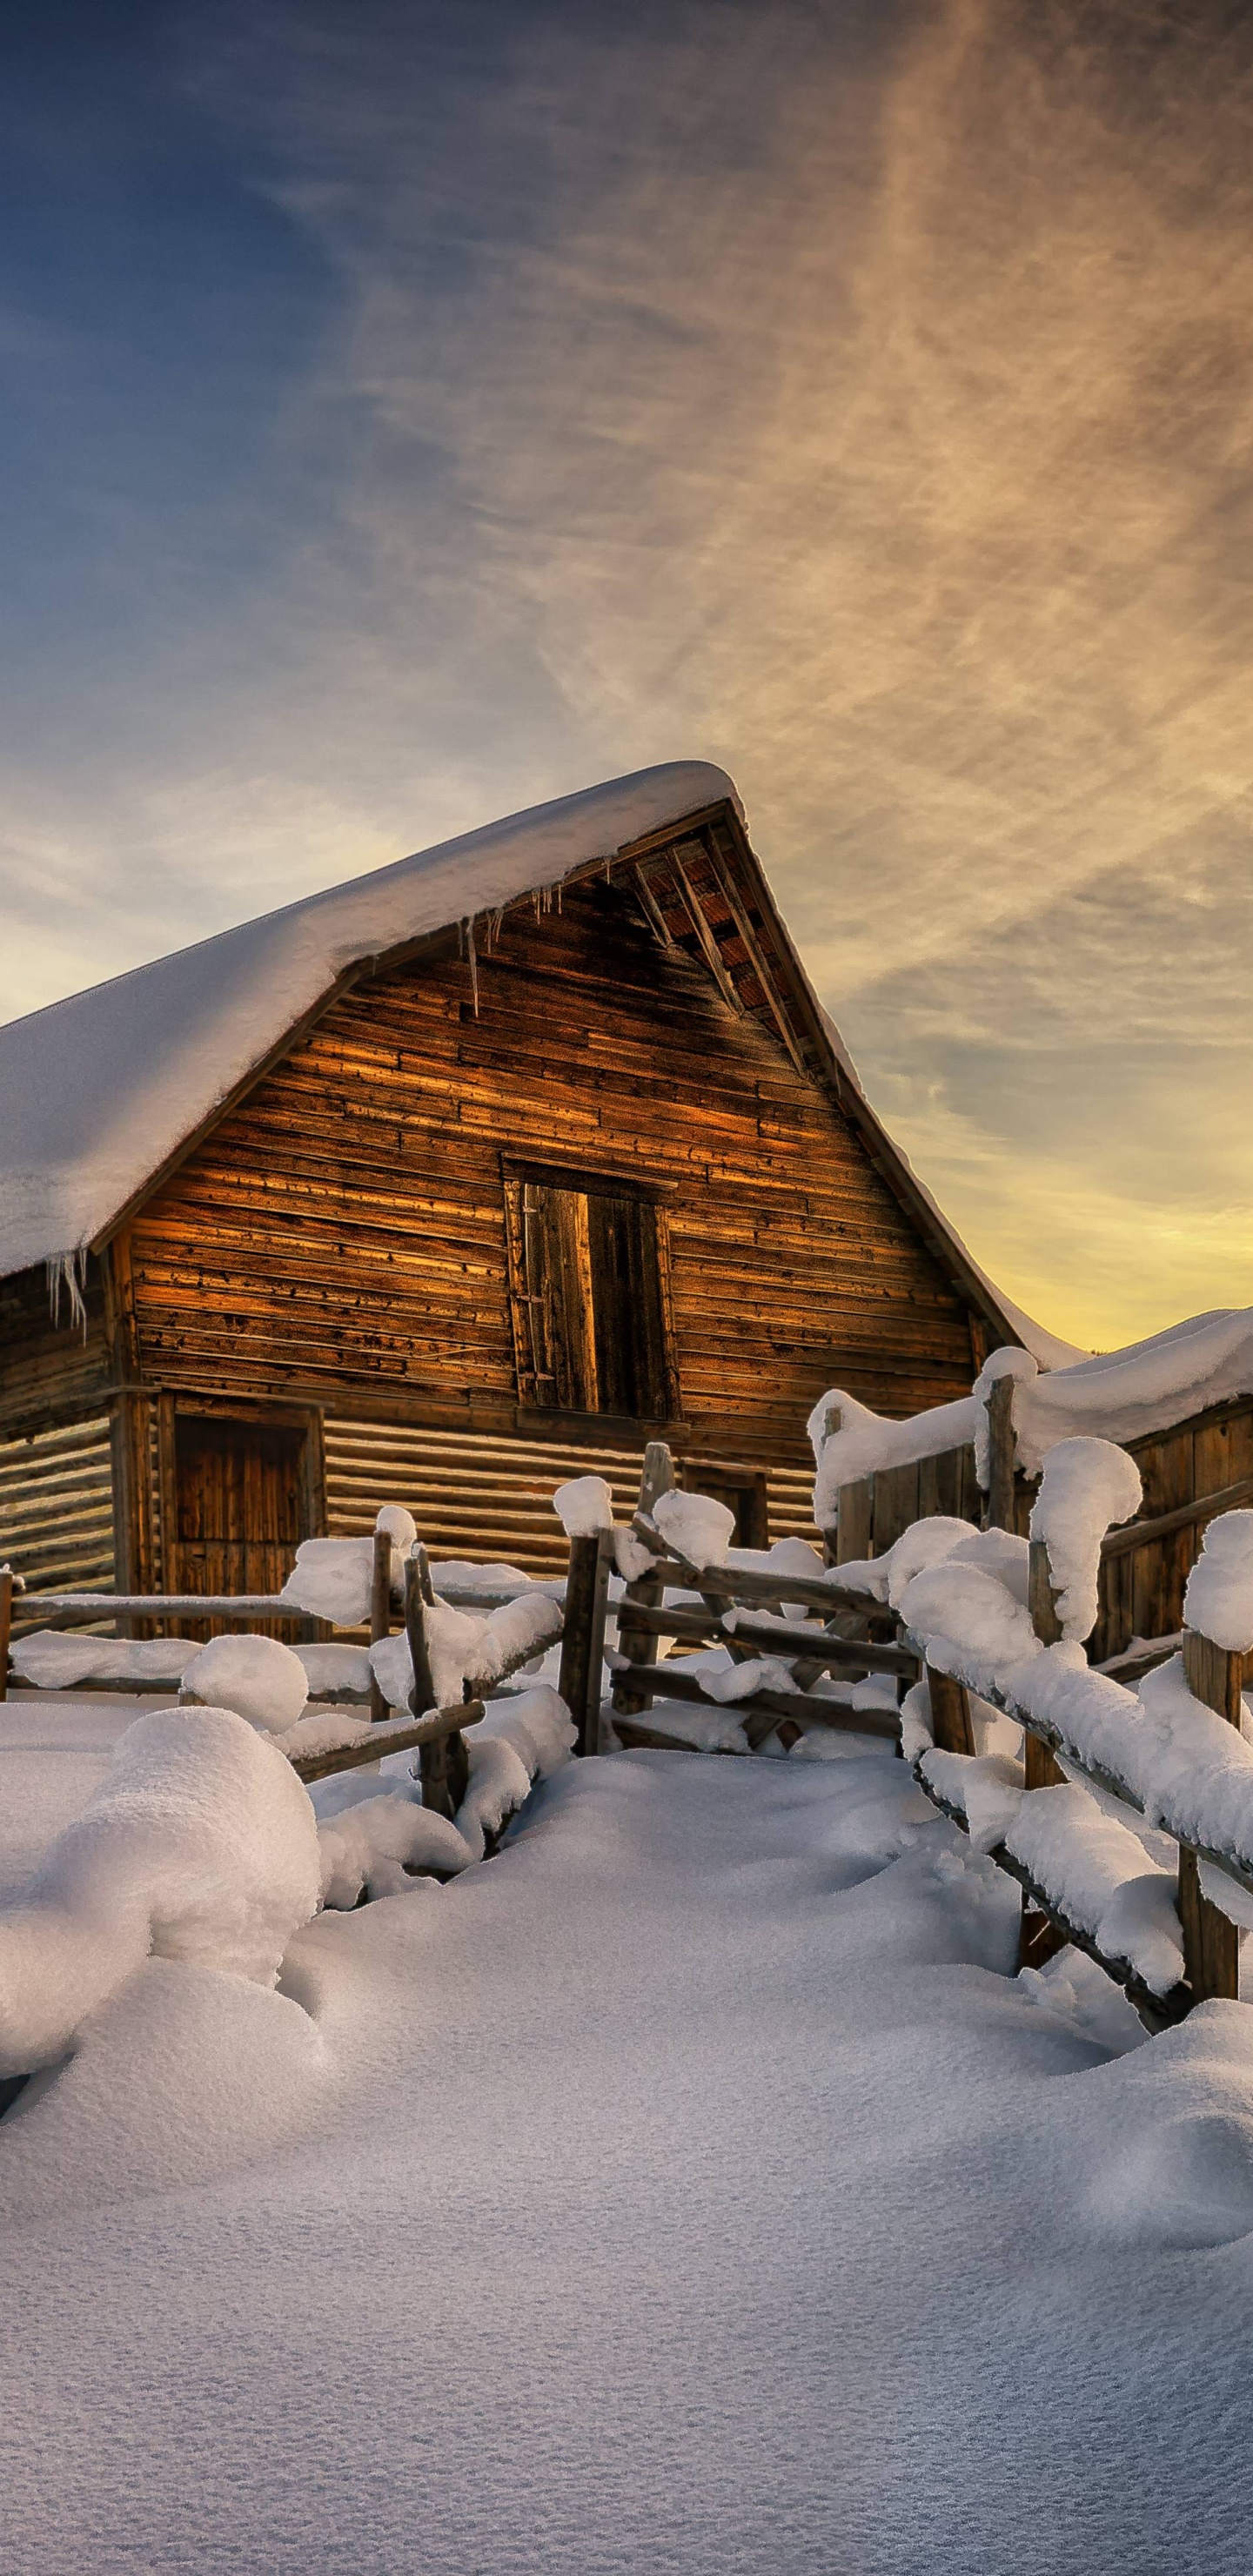 Braunes Holzhaus Mit Schnee Bedeckt Unter Bewölktem Himmel. Wallpaper in 1440x2960 Resolution